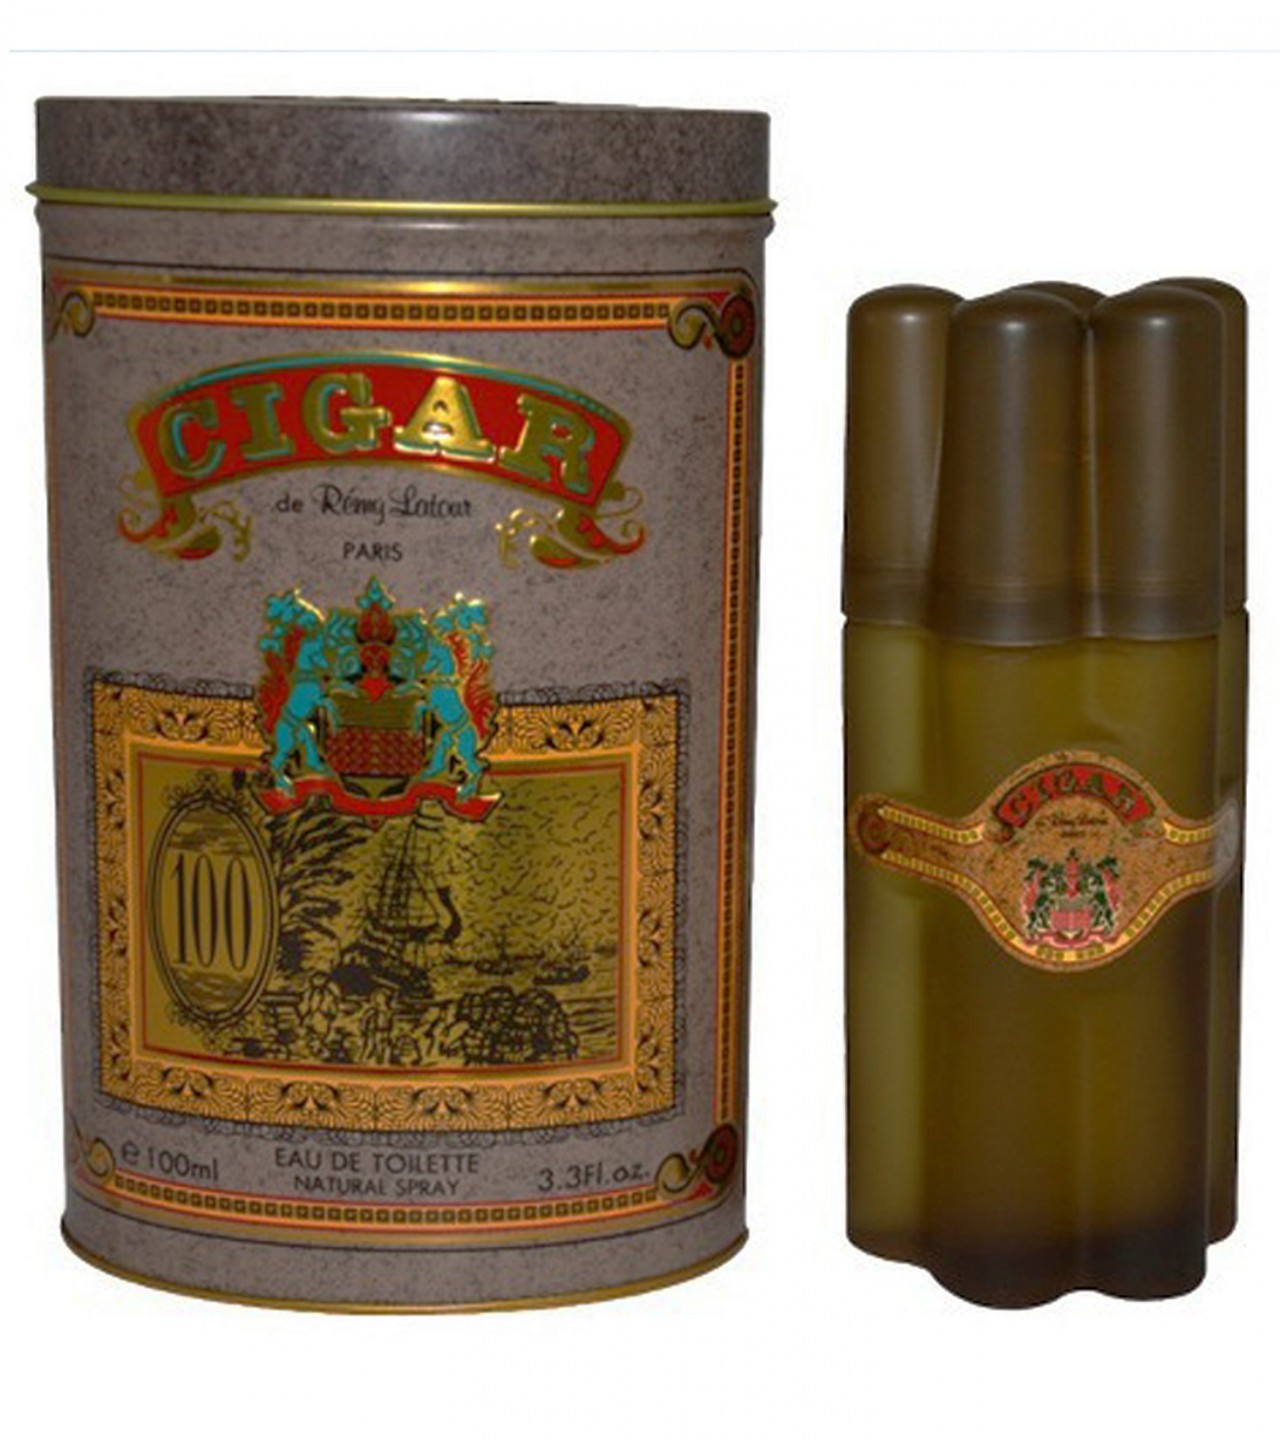 Remy Latour Cigar Perfume For Men Eau De Toilette Spray, 3.3 Ounces - 100 ml